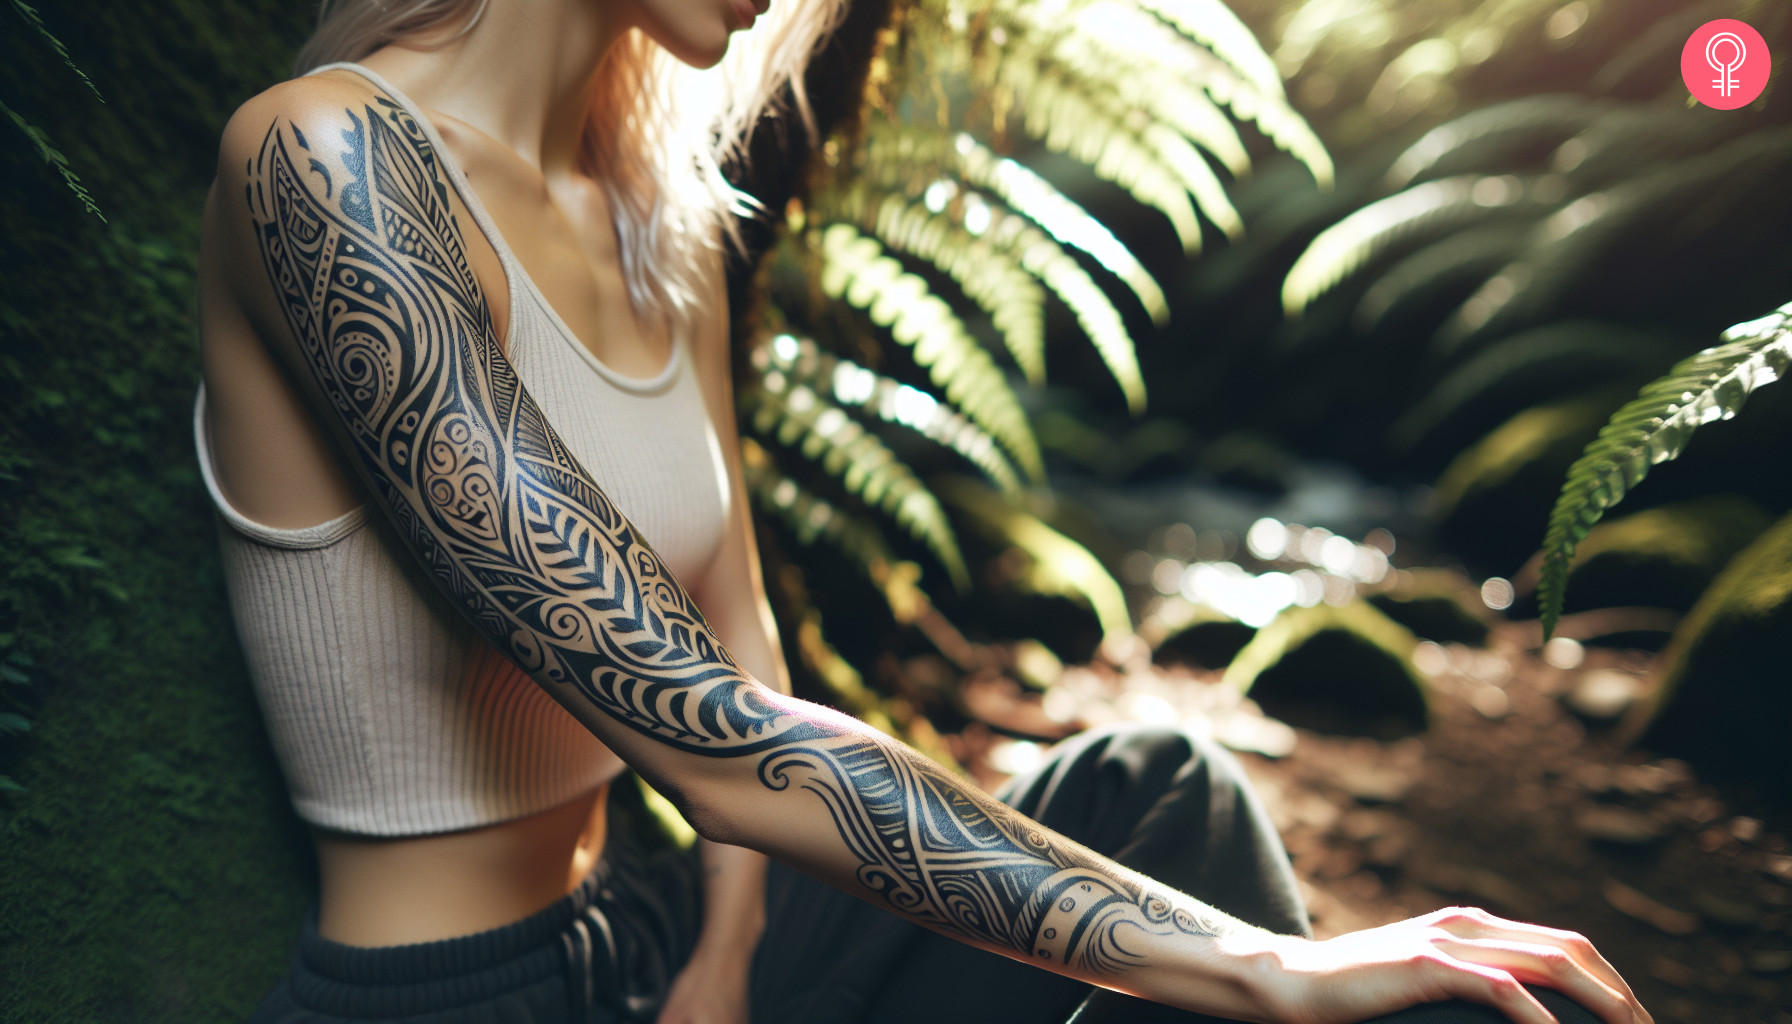 Full arm maori tattoo on a woman